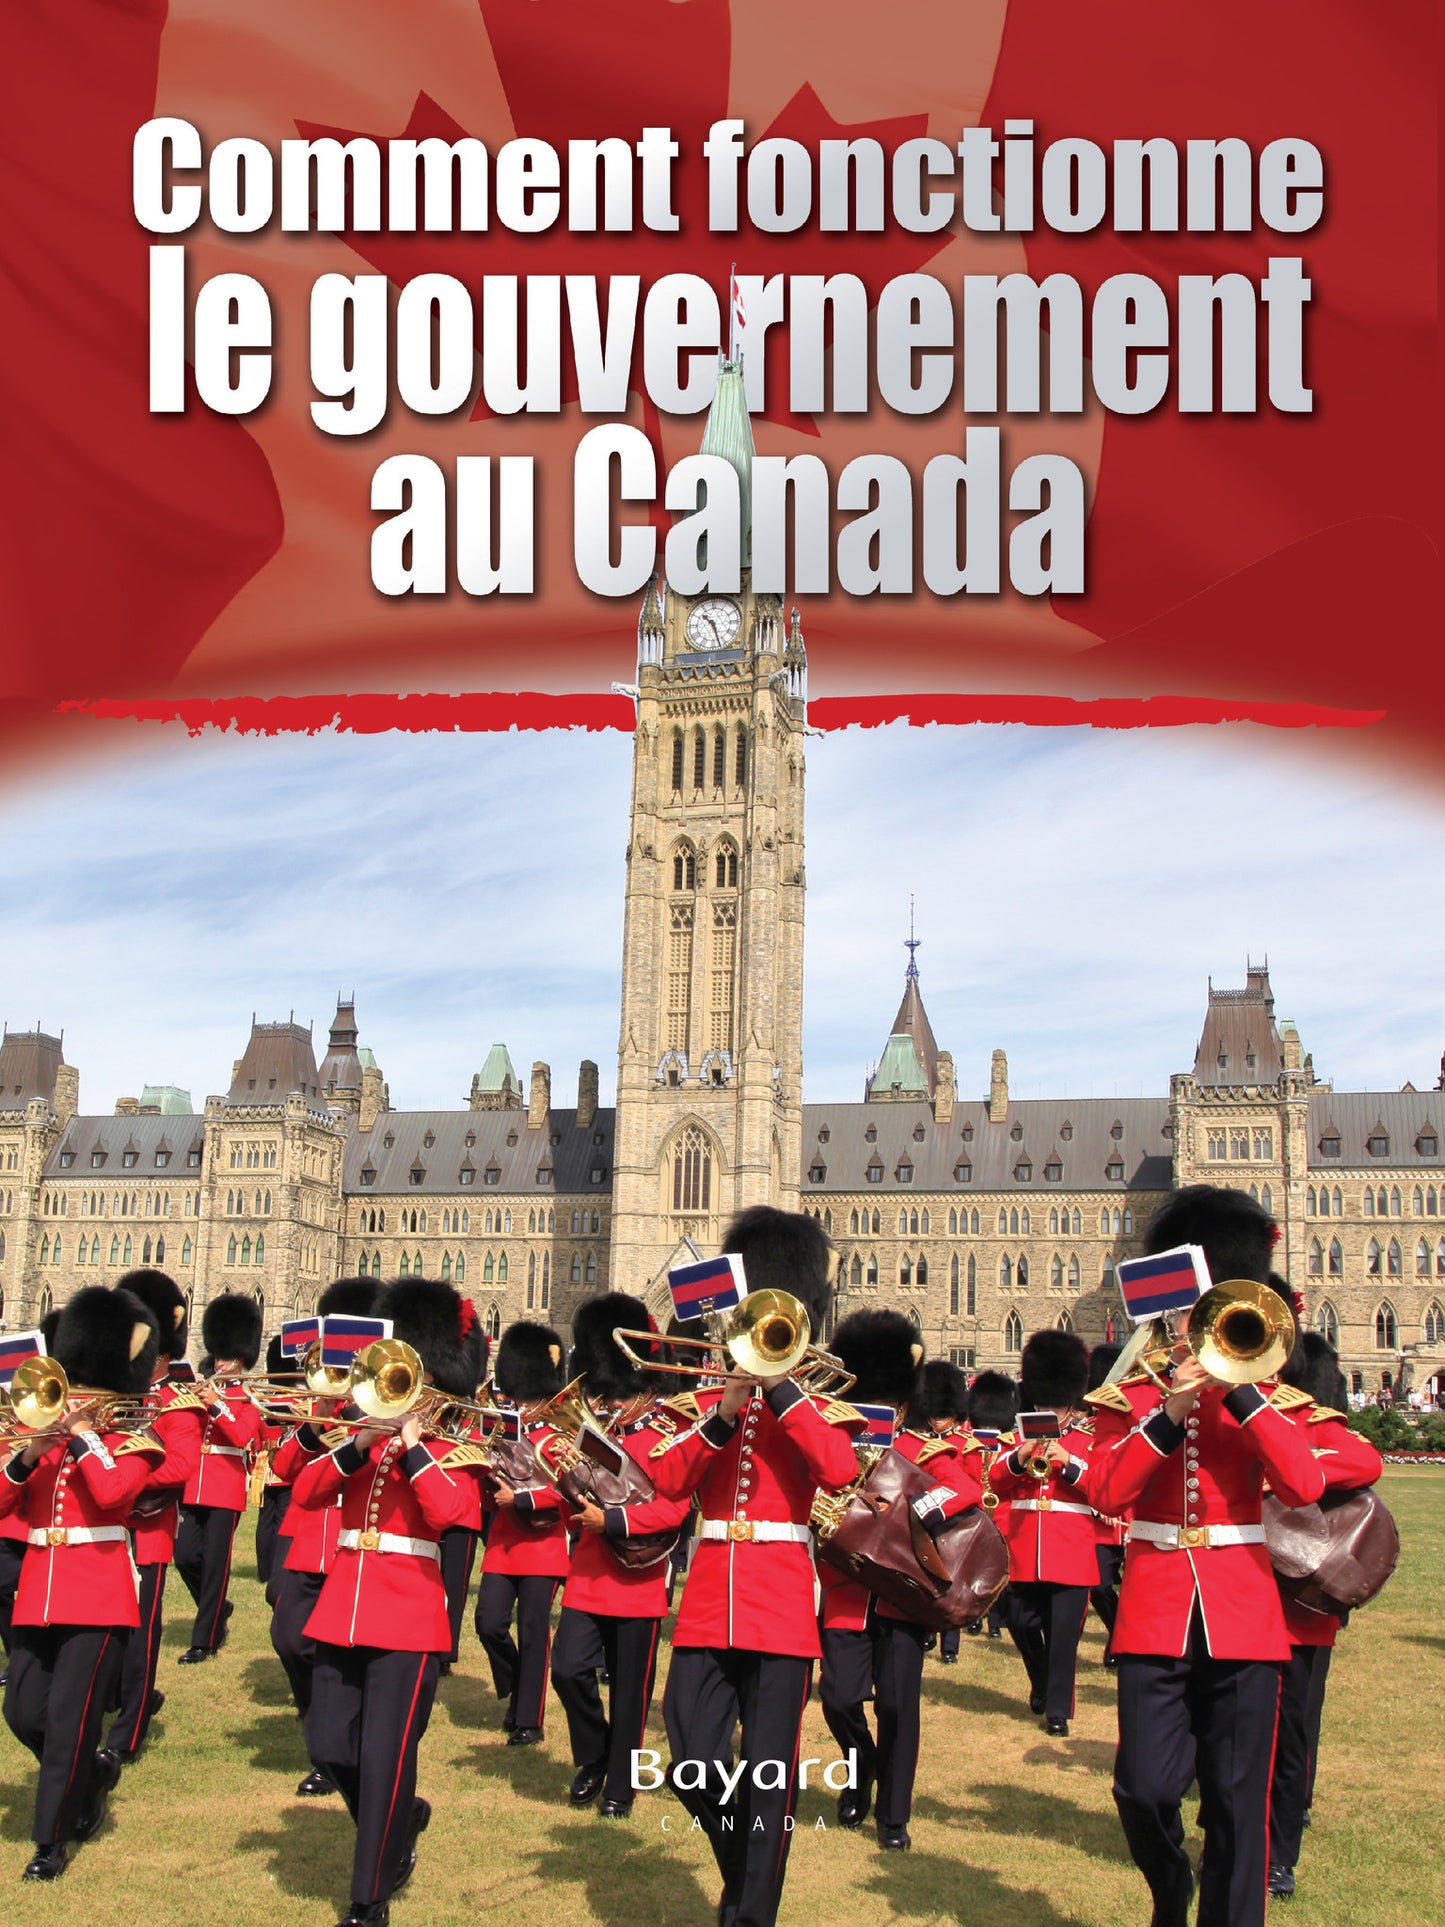 Comment fonctionne le gouvernement au Canada?